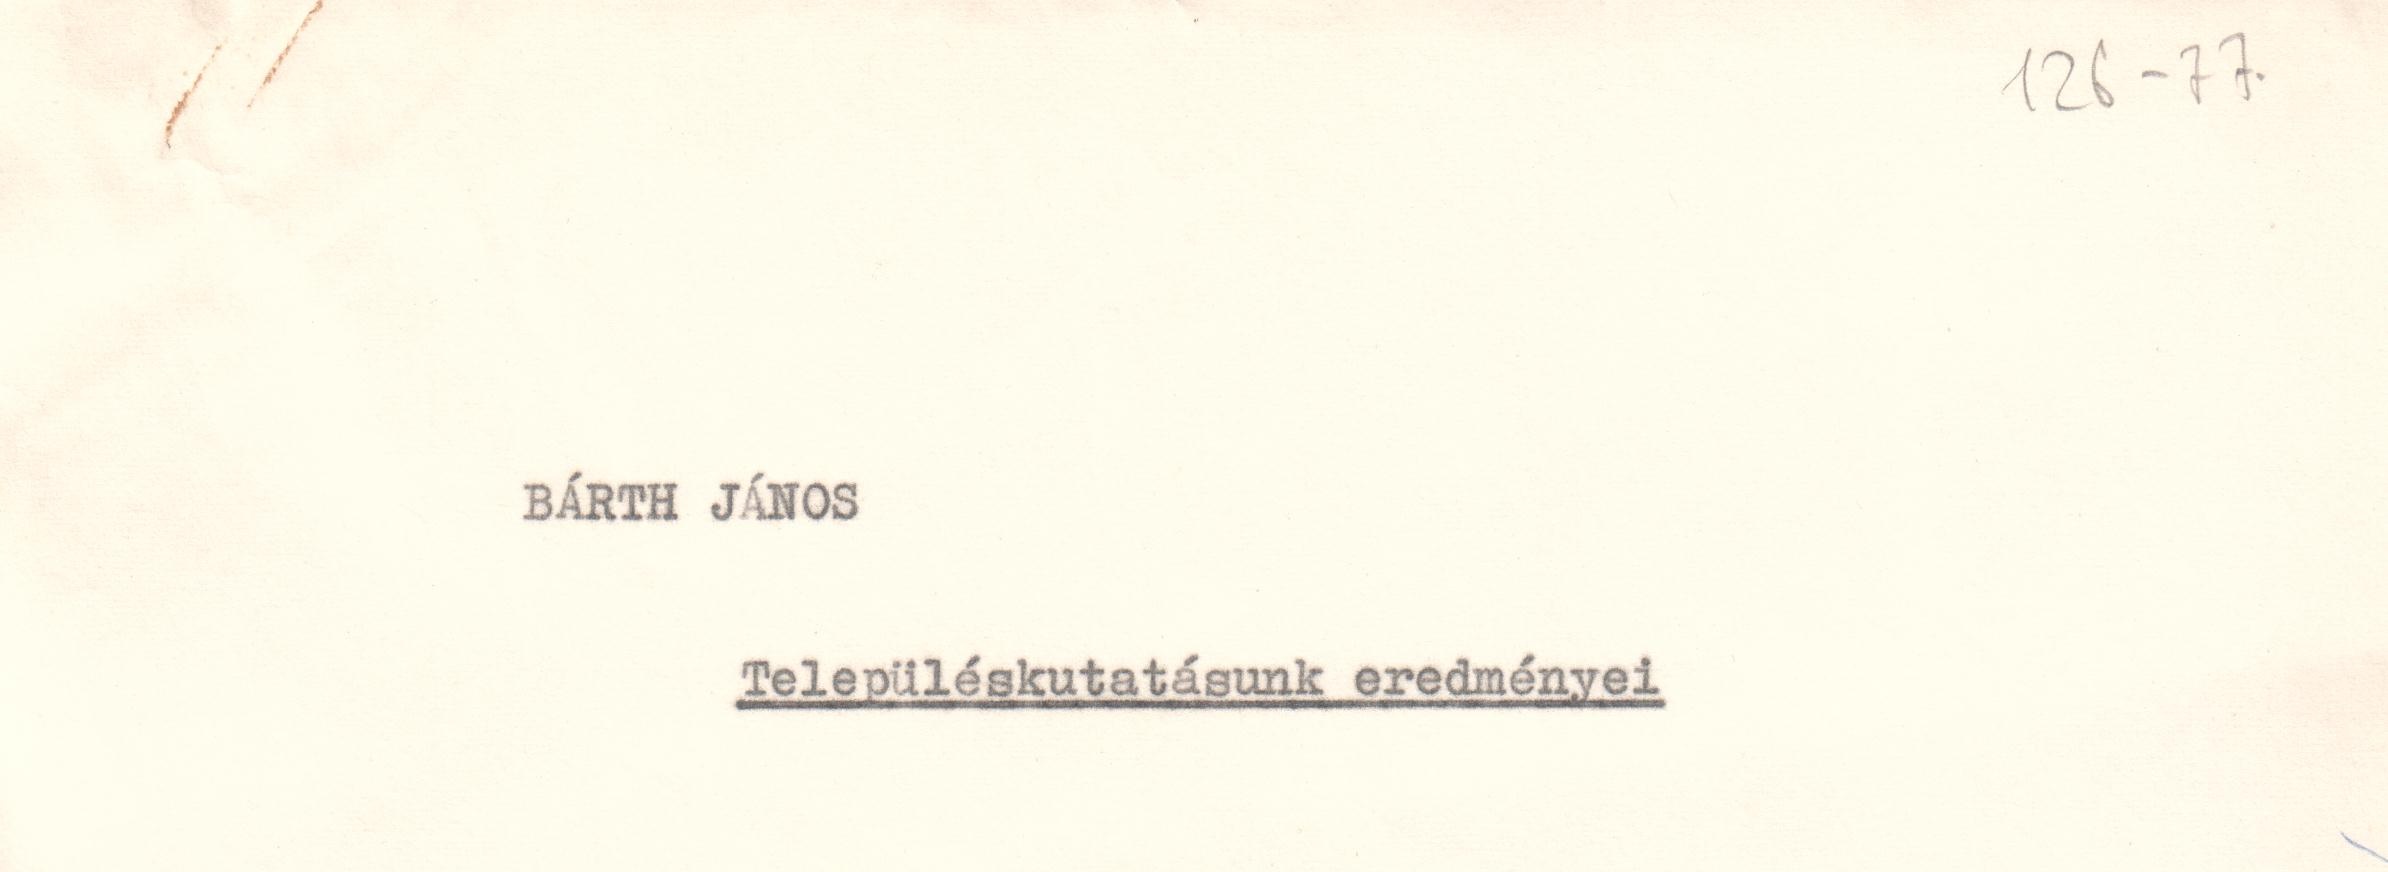 Telpüléskutatásunk eredményei c. előadás szövege. Elhangzott Budapesten az ELTE-n 1976. október 29-én. (Viski Károly Múzeum Kalocsa RR-F)